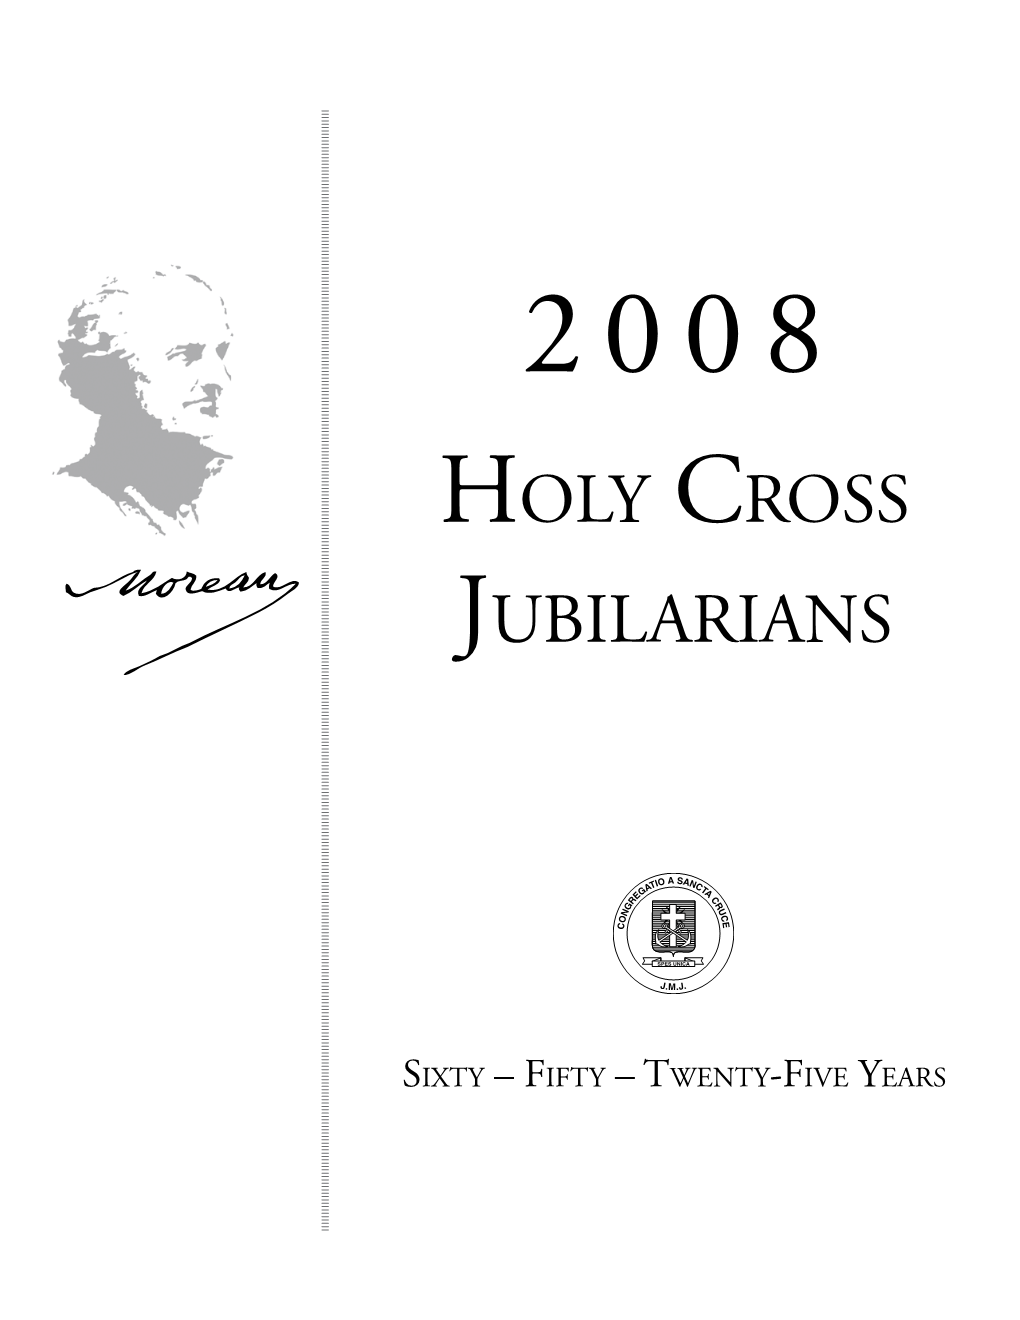 Holy Cross Jubilarians